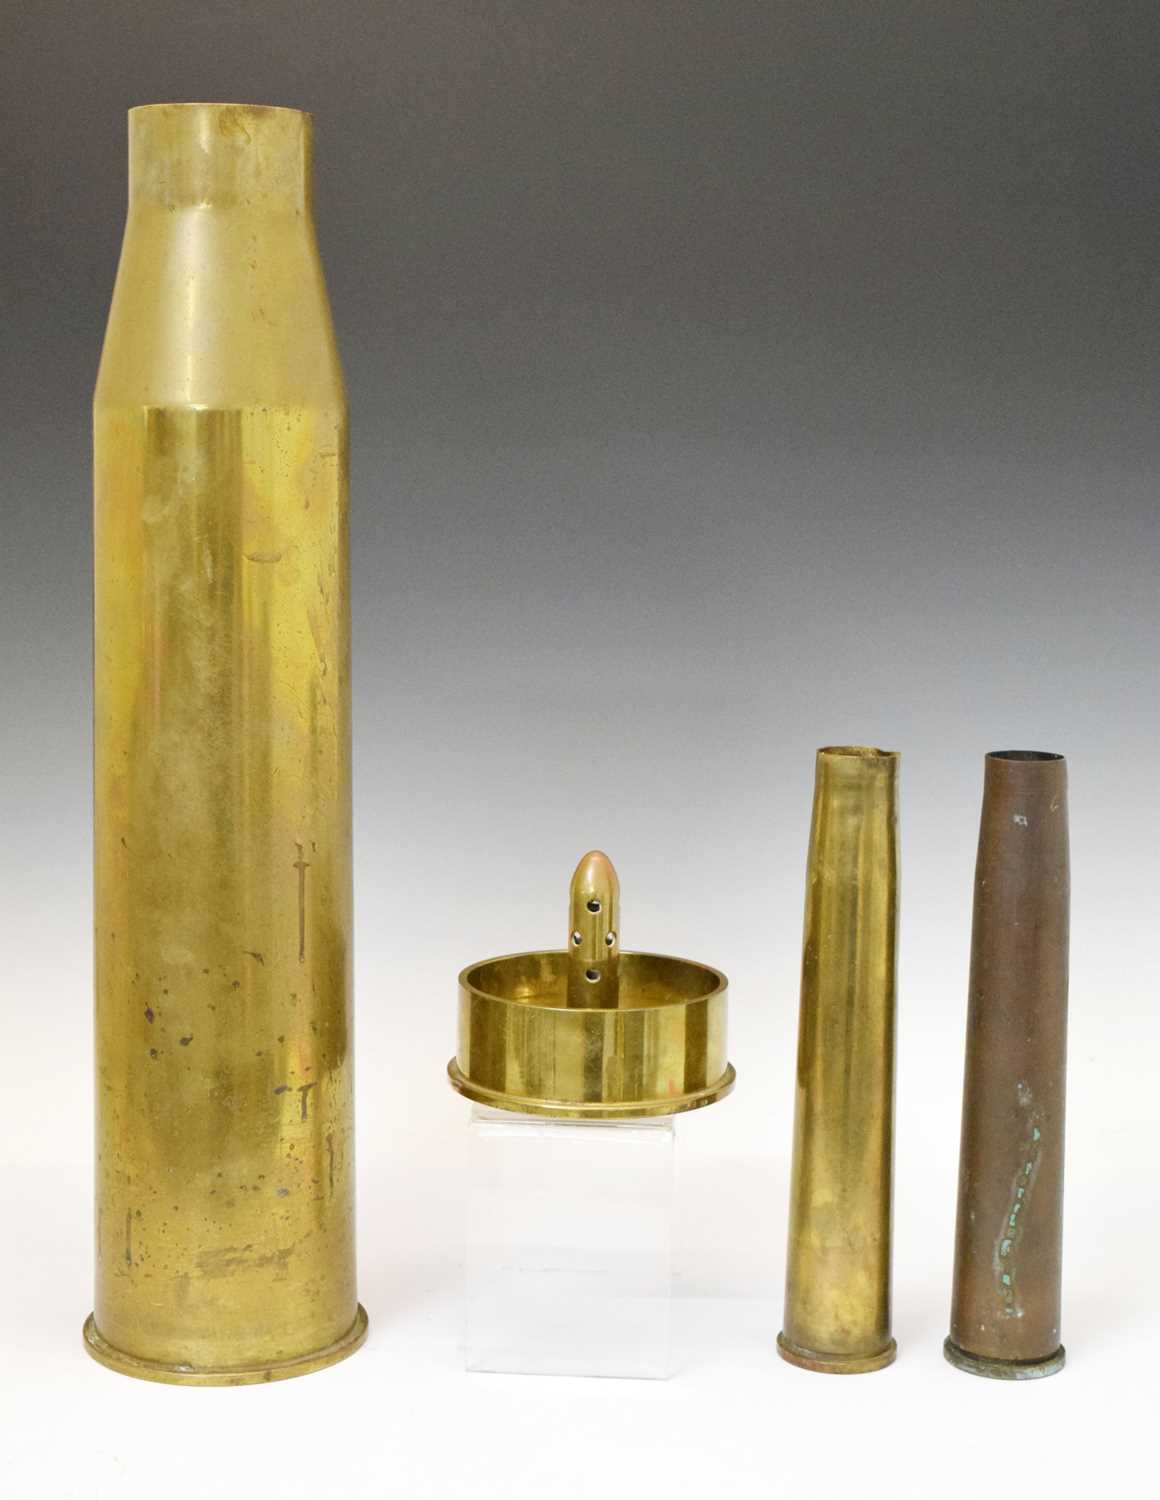 Buy World War Trench Art Pair of Brass Artillery Shell Casing